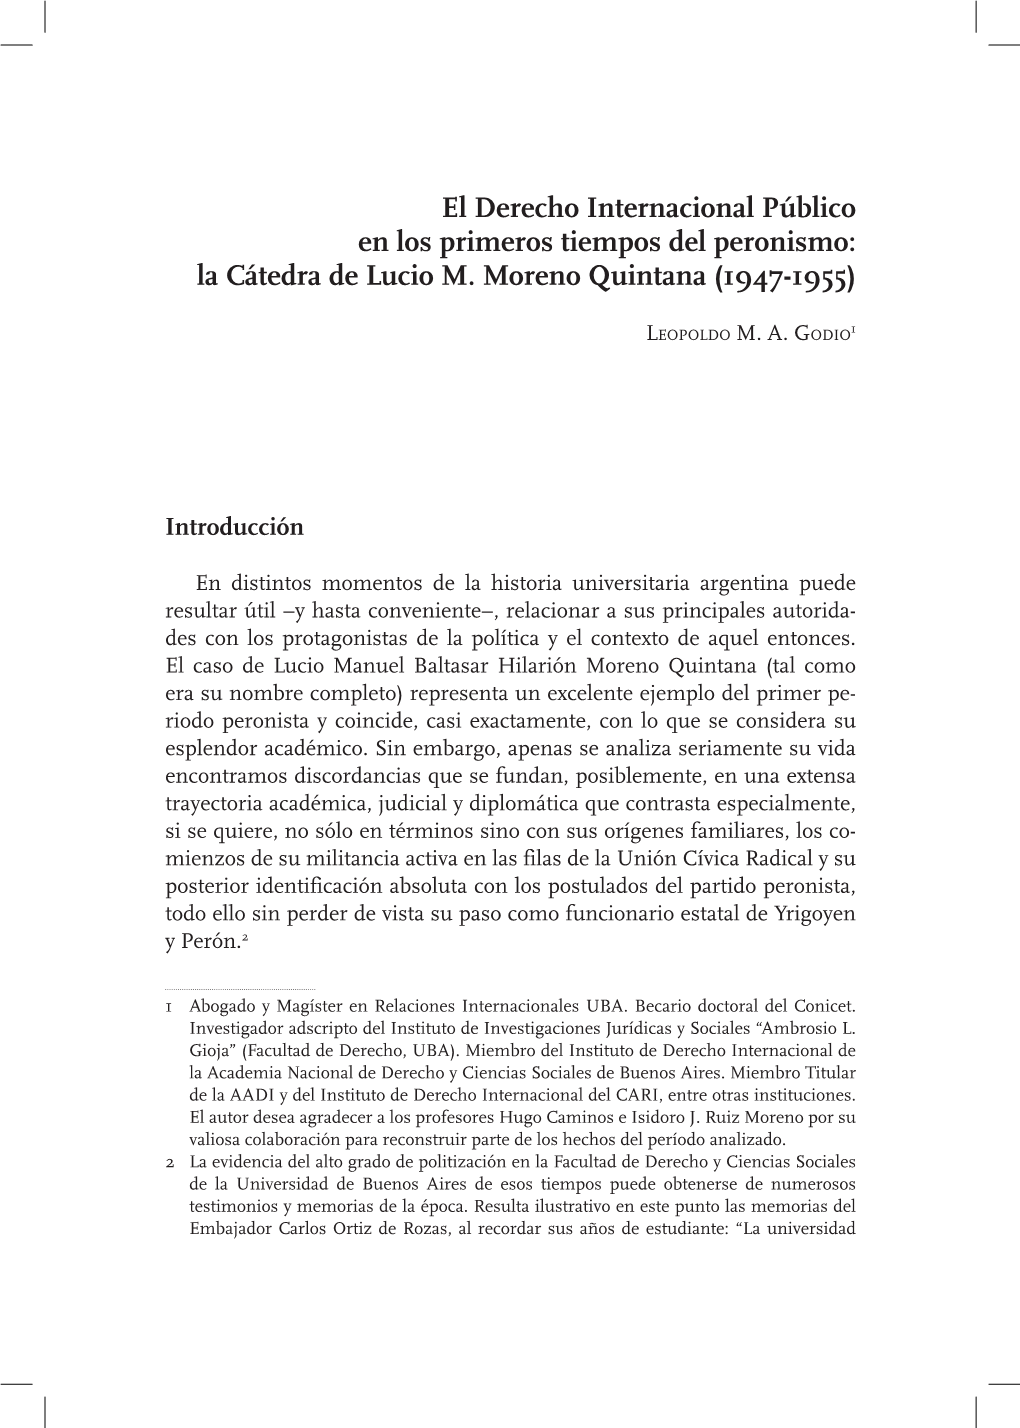 El Derecho Internacional Público En Los Primeros Tiempos Del Peronismo: La Cátedra De Lucio M